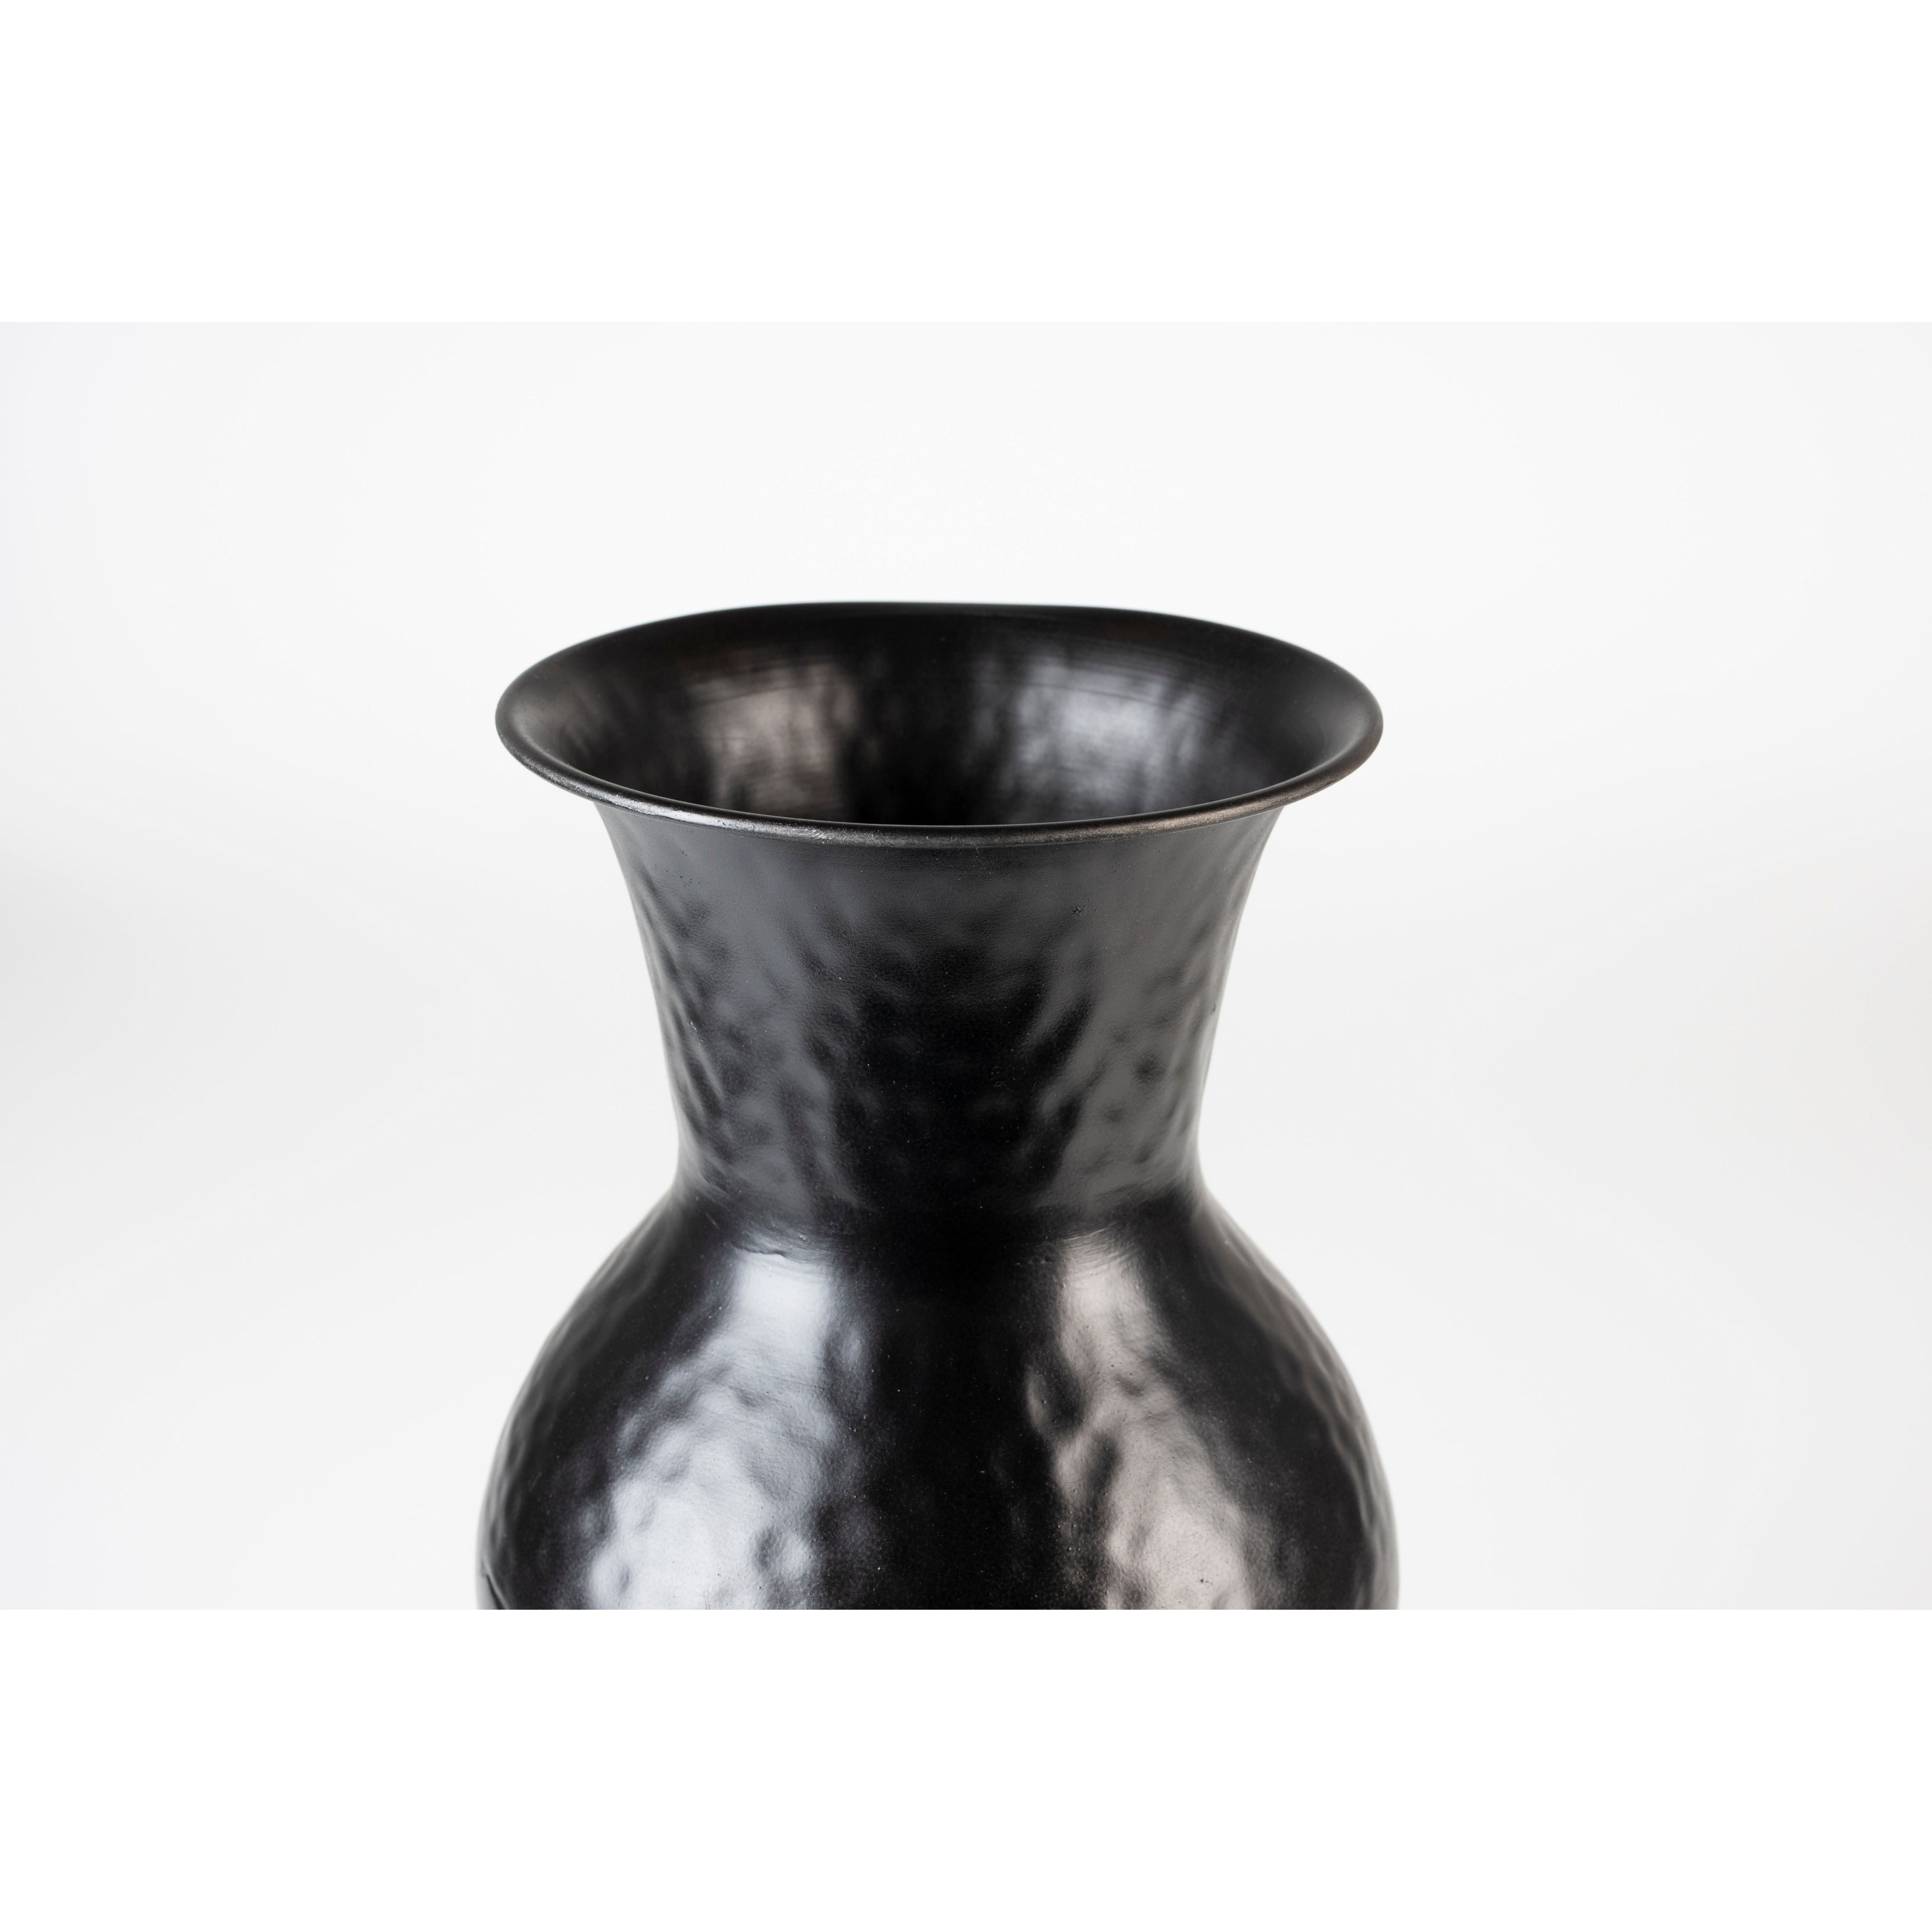 Vase dunja antique black s